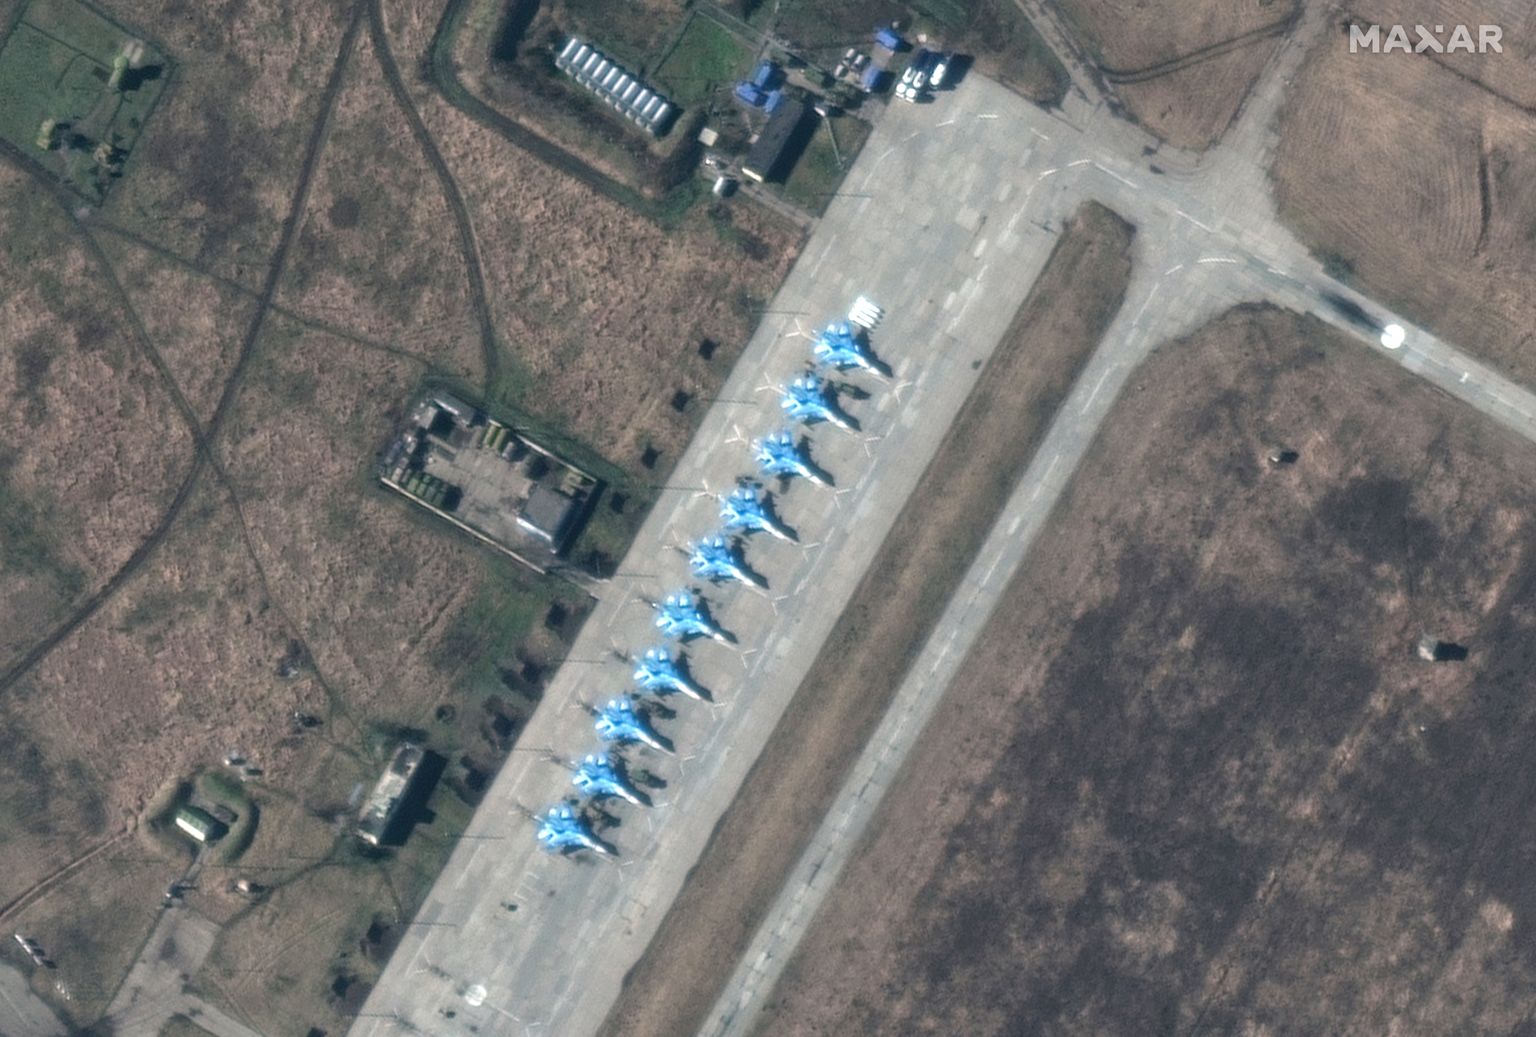 Maxar Technologiese satelliidifoto Vene Suhhoi Su-34 hävitus-pommituslennukitest Krasnodari krais Primorsko-Ahhtarski õhujõudude baasis. Lääne eksperte üllatas, et Venemaa on Ukrainasse tungides kasutanud vähe sõjalennukeid